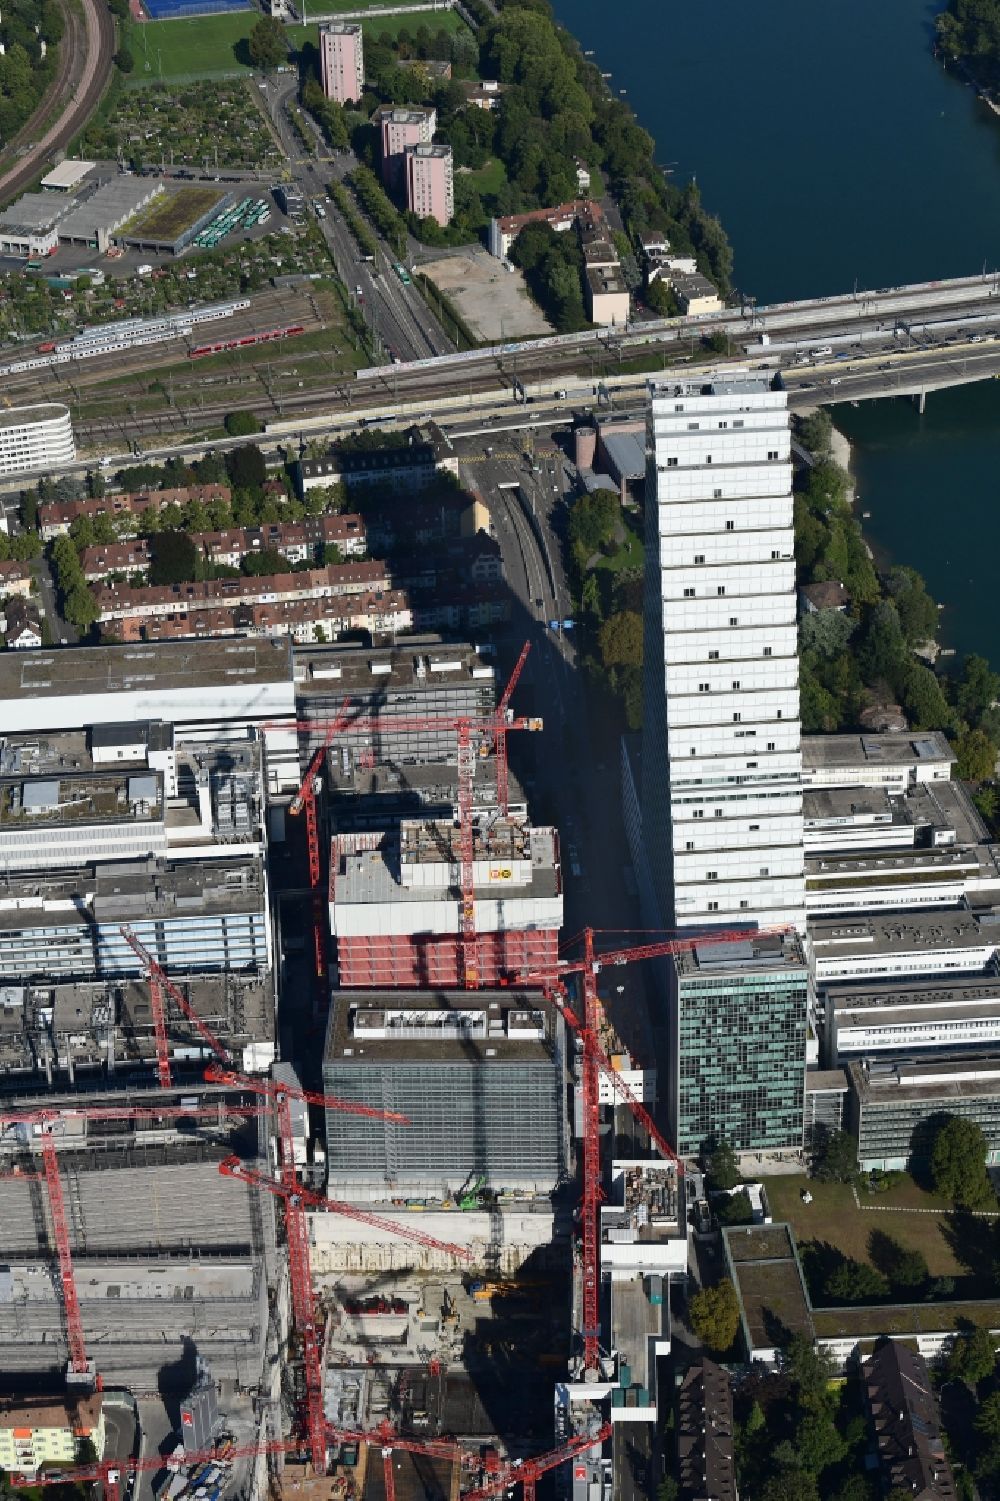 Luftaufnahme Basel - Erweiterungs- Baustellen am Areal und Betriebsgelände der Pharmafirma Roche mit dem Roche- Turm - Hochhaus in Basel in der Schweiz